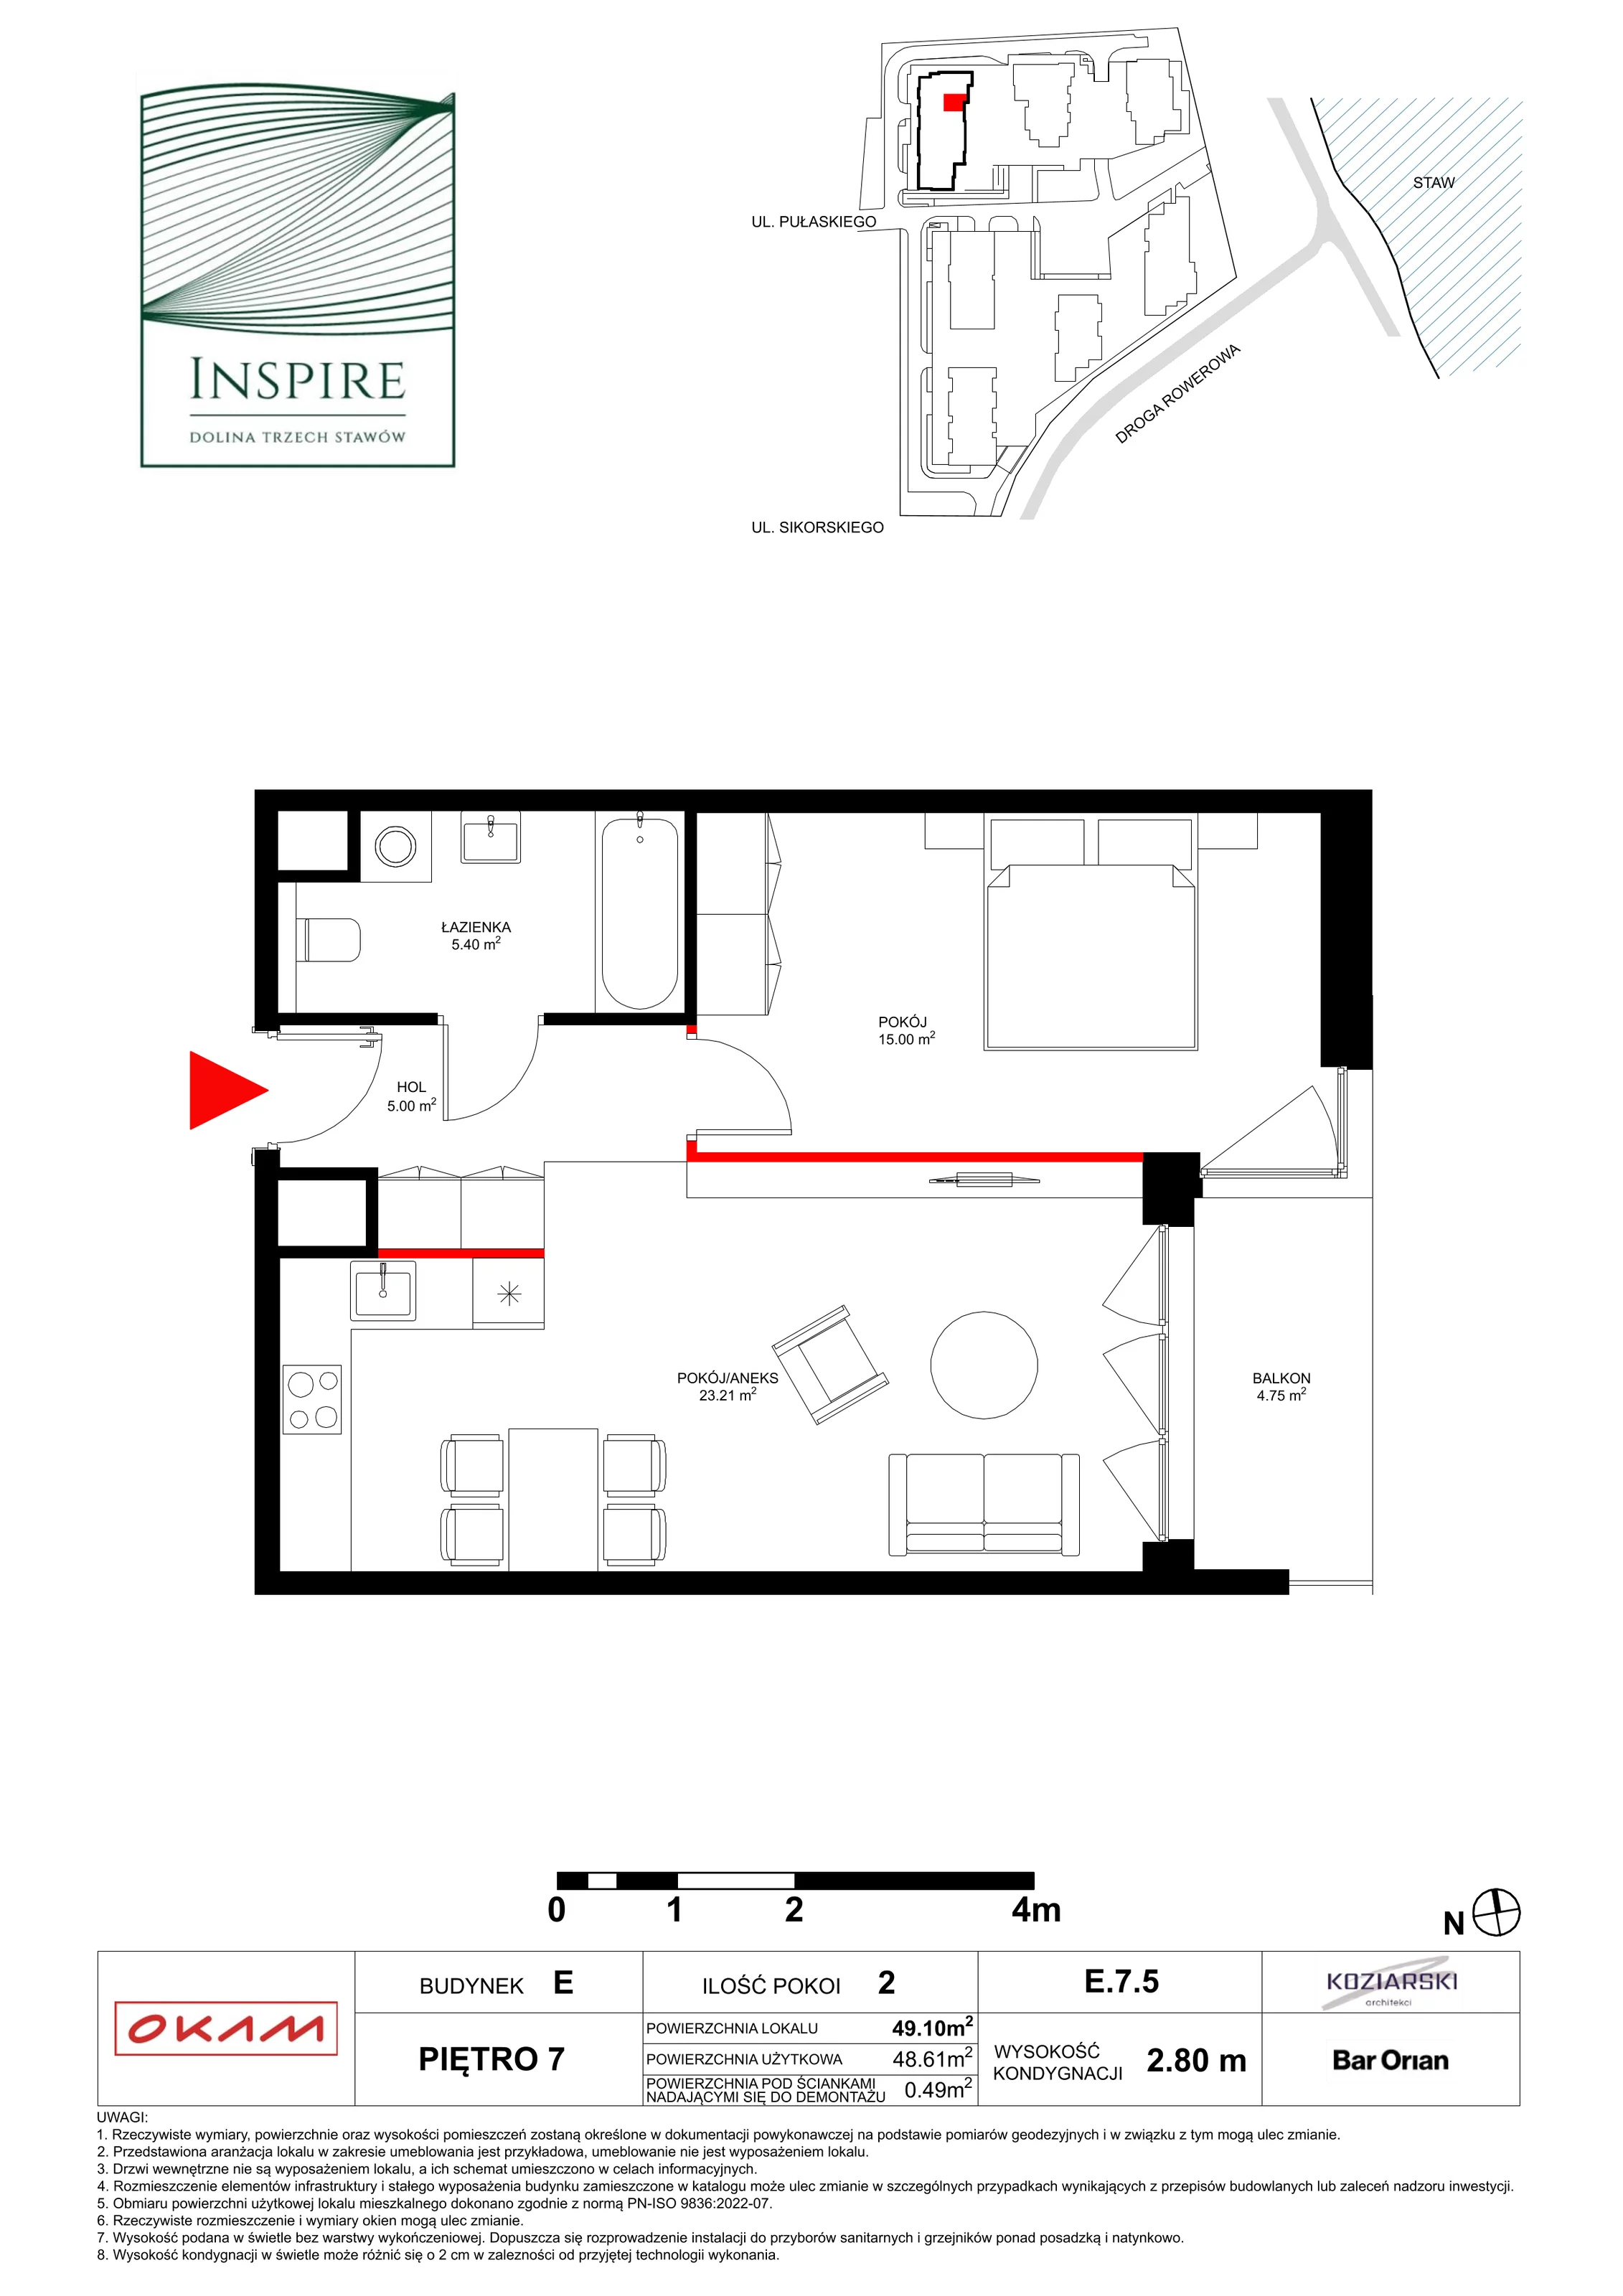 Apartament 48,61 m², piętro 7, oferta nr E.7.5, Inspire, Katowice, Osiedle Paderewskiego-Muchowiec, Dolina Trzech Stawów, ul. gen. Sikorskiego 41